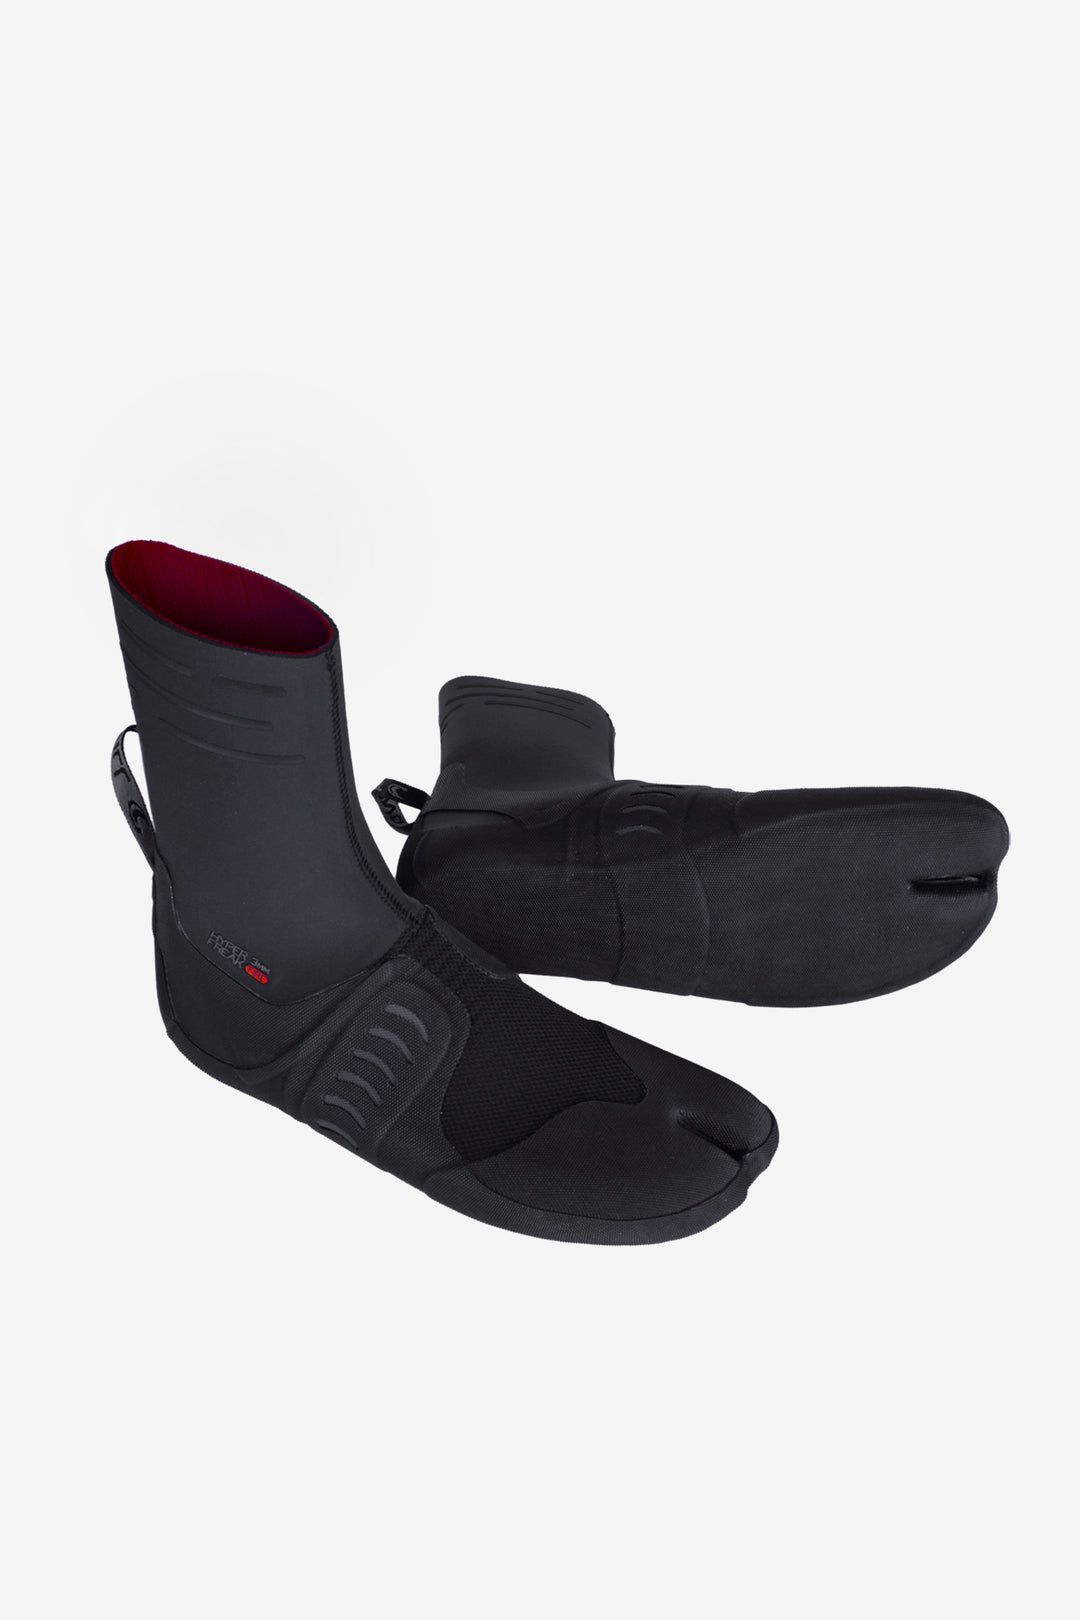 Hyperfreak Fire ST 3mm Boot-O'Neill-black,boot,booties,logo,o'neill,oneill wetsuit,wetsuit